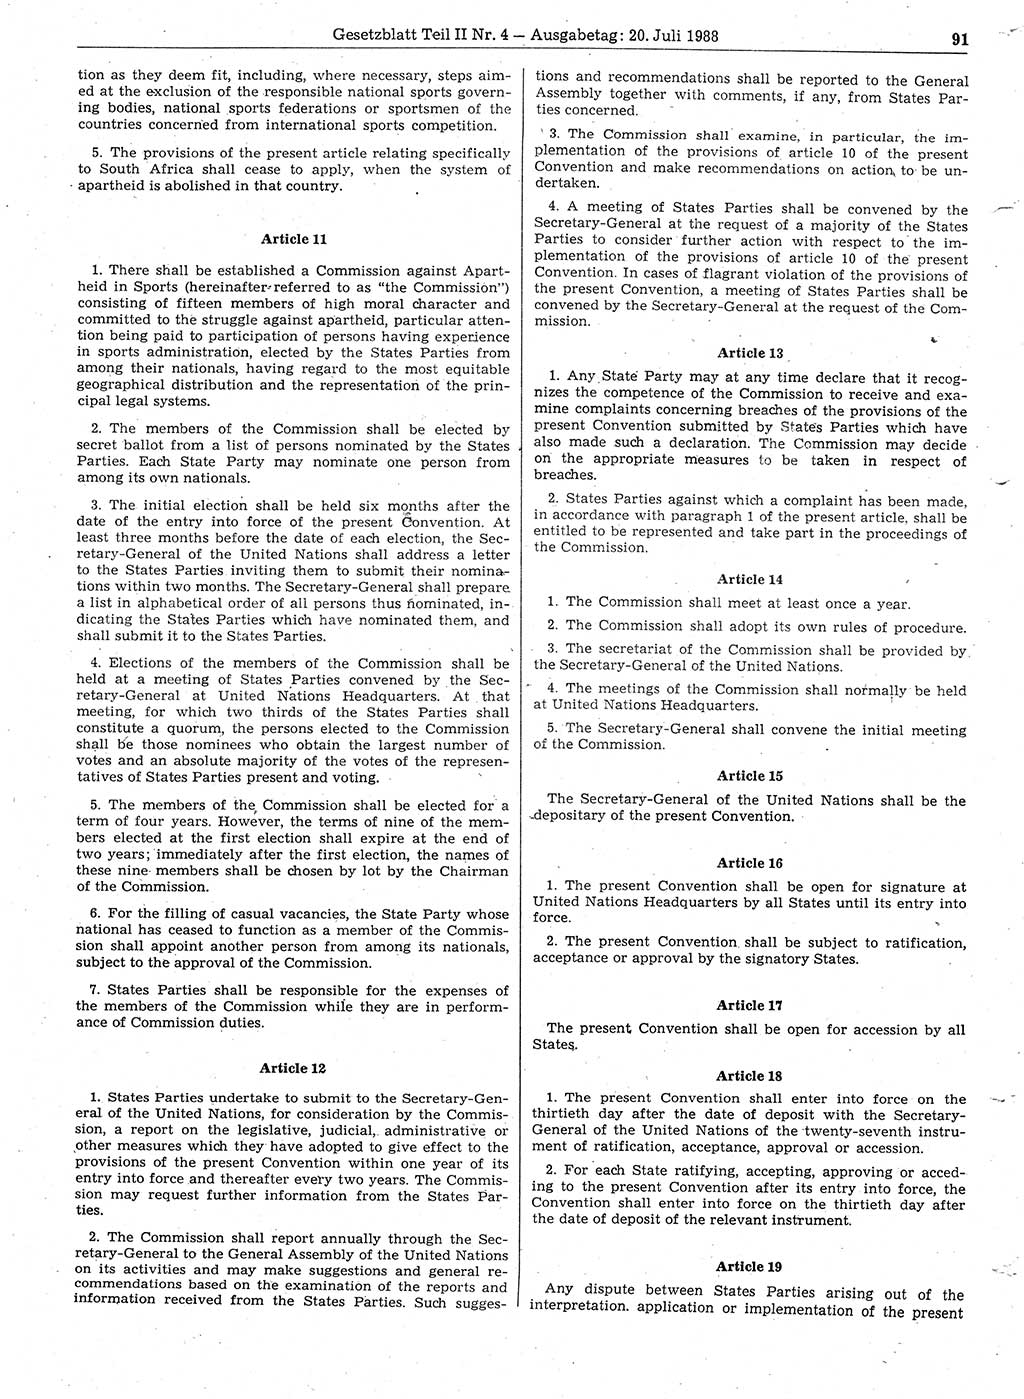 Gesetzblatt (GBl.) der Deutschen Demokratischen Republik (DDR) Teil ⅠⅠ 1988, Seite 91 (GBl. DDR ⅠⅠ 1988, S. 91)